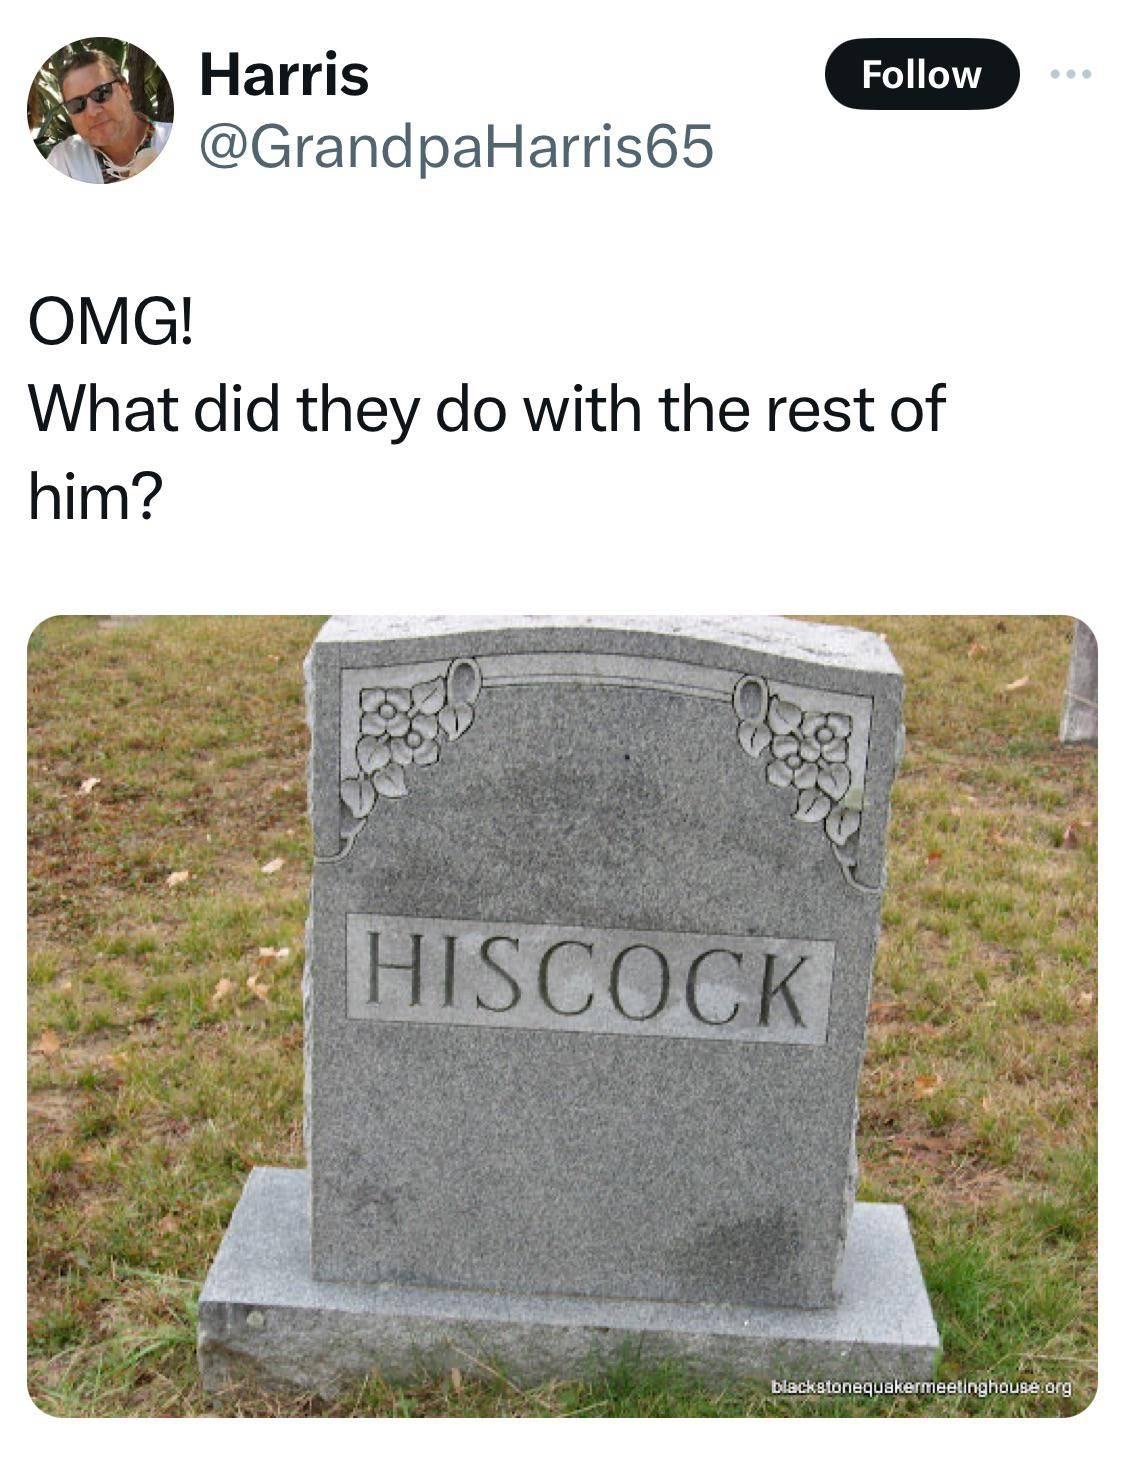 Obrázek hiscock lays here